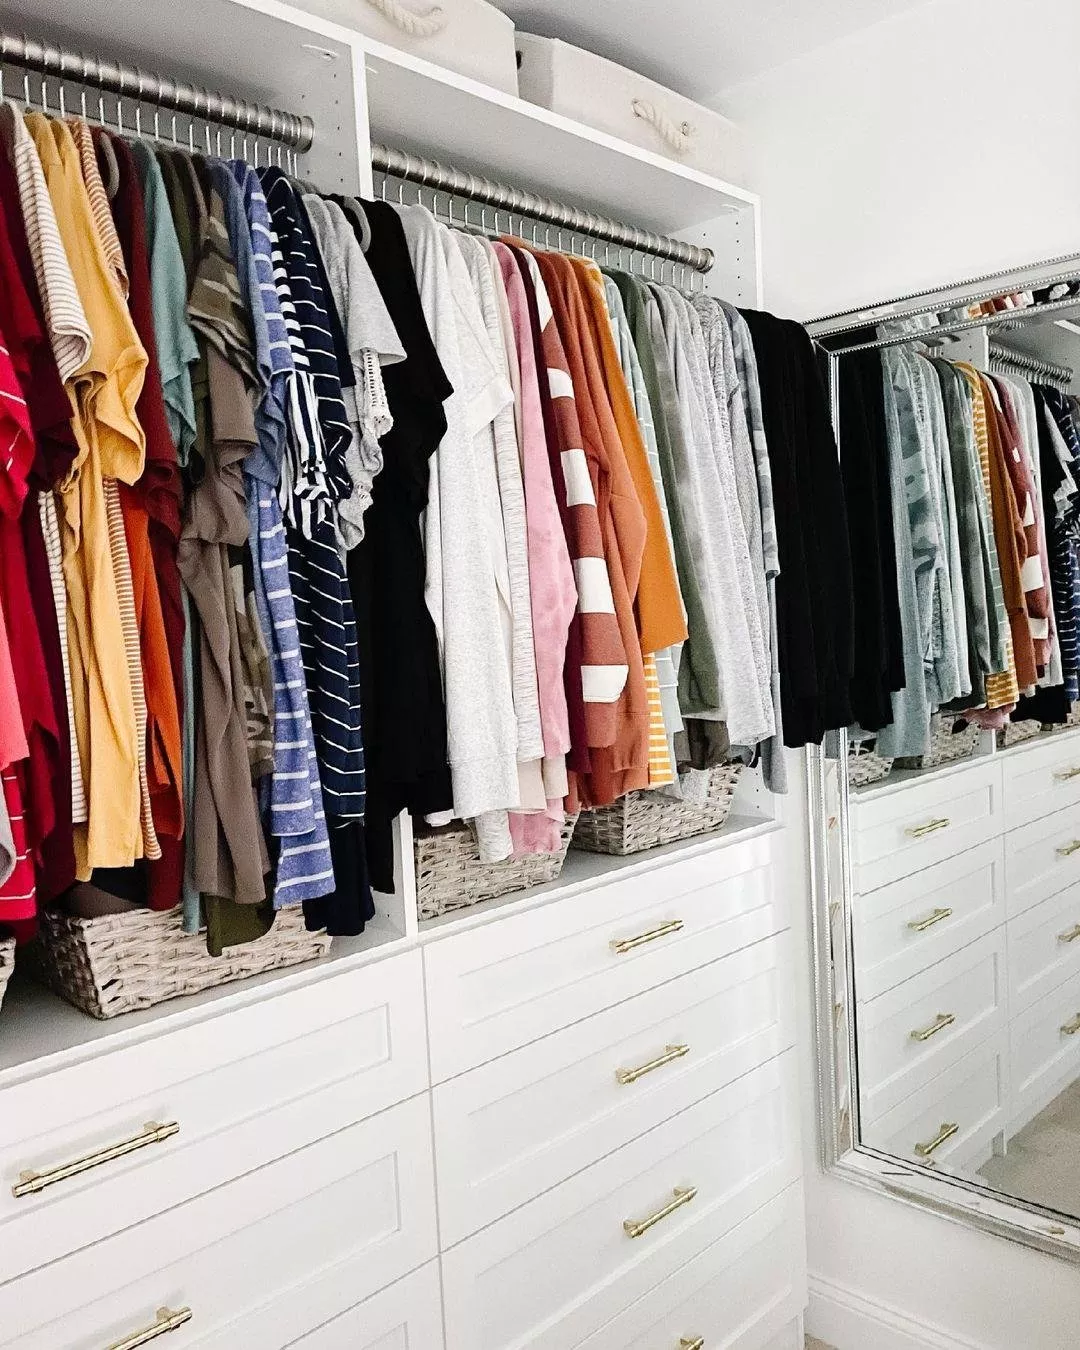 أكثر من 30 صورة دواليب ملابس يمكنكِ أن تستوحي منها لتنفيذها في منزلكِ